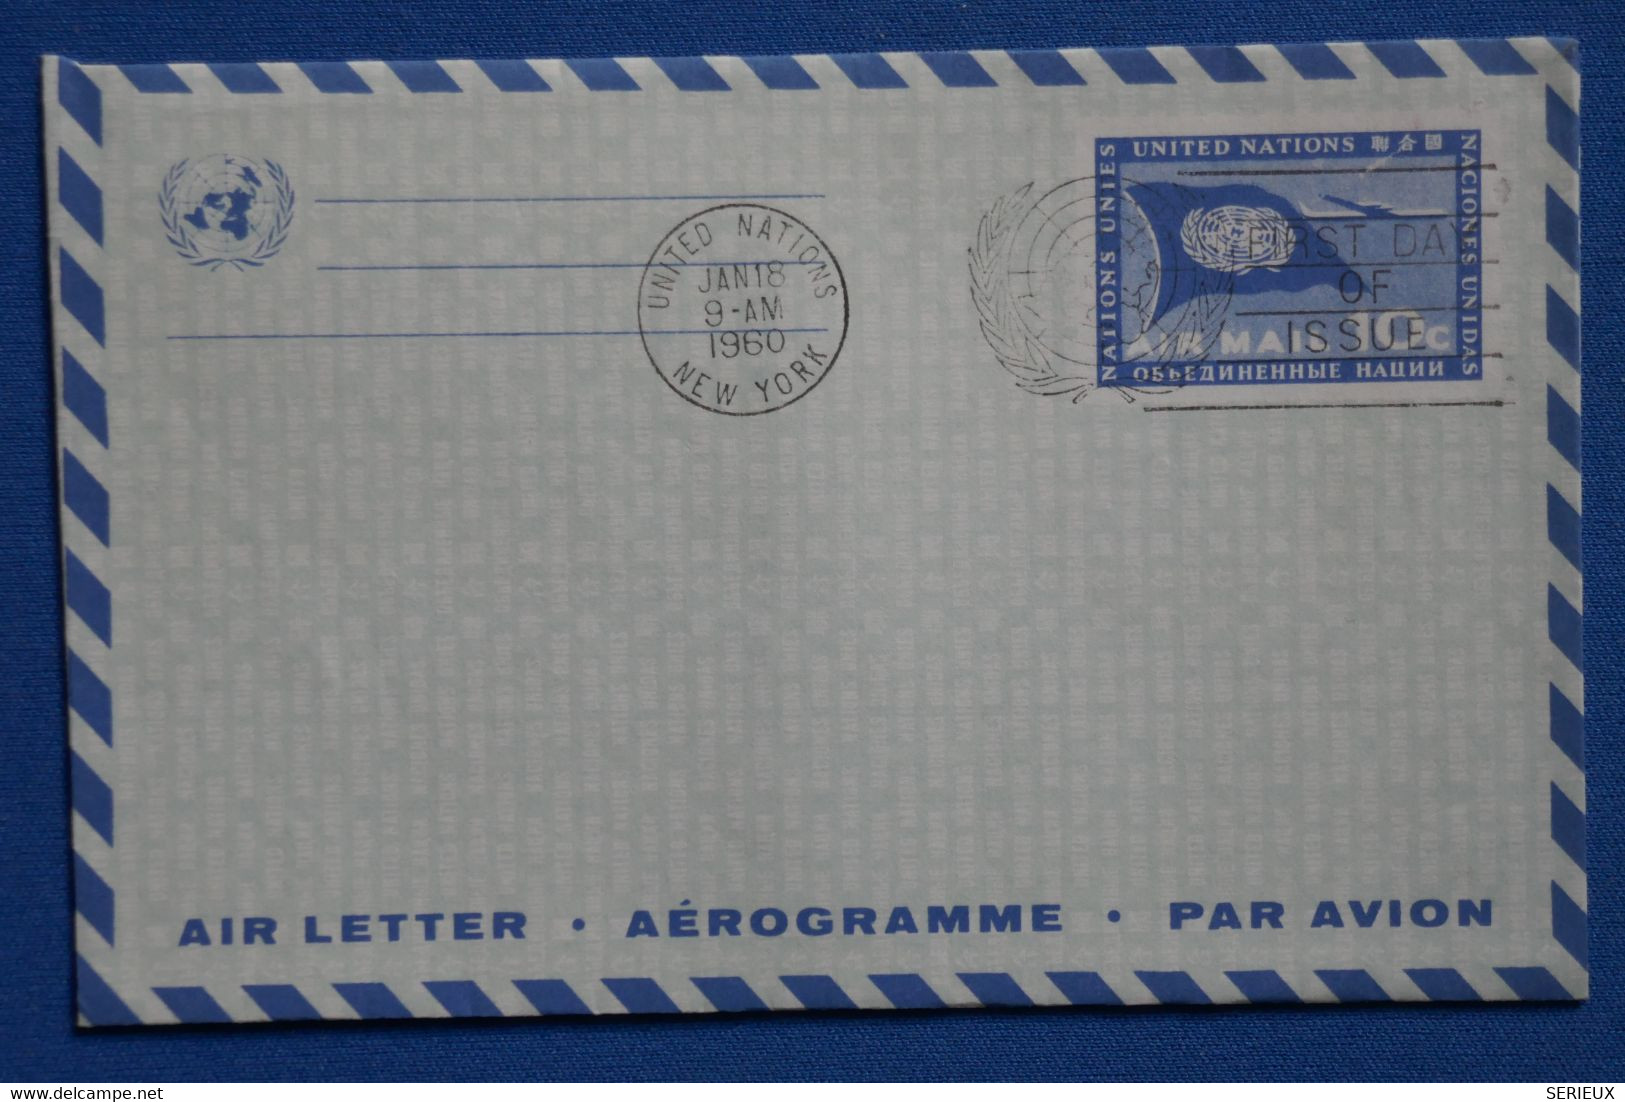 P4 ETATS UNIS NATIONS UNIES BELLE LETTRE AEROGRAMME 1960 NEW YORK - Lettres & Documents